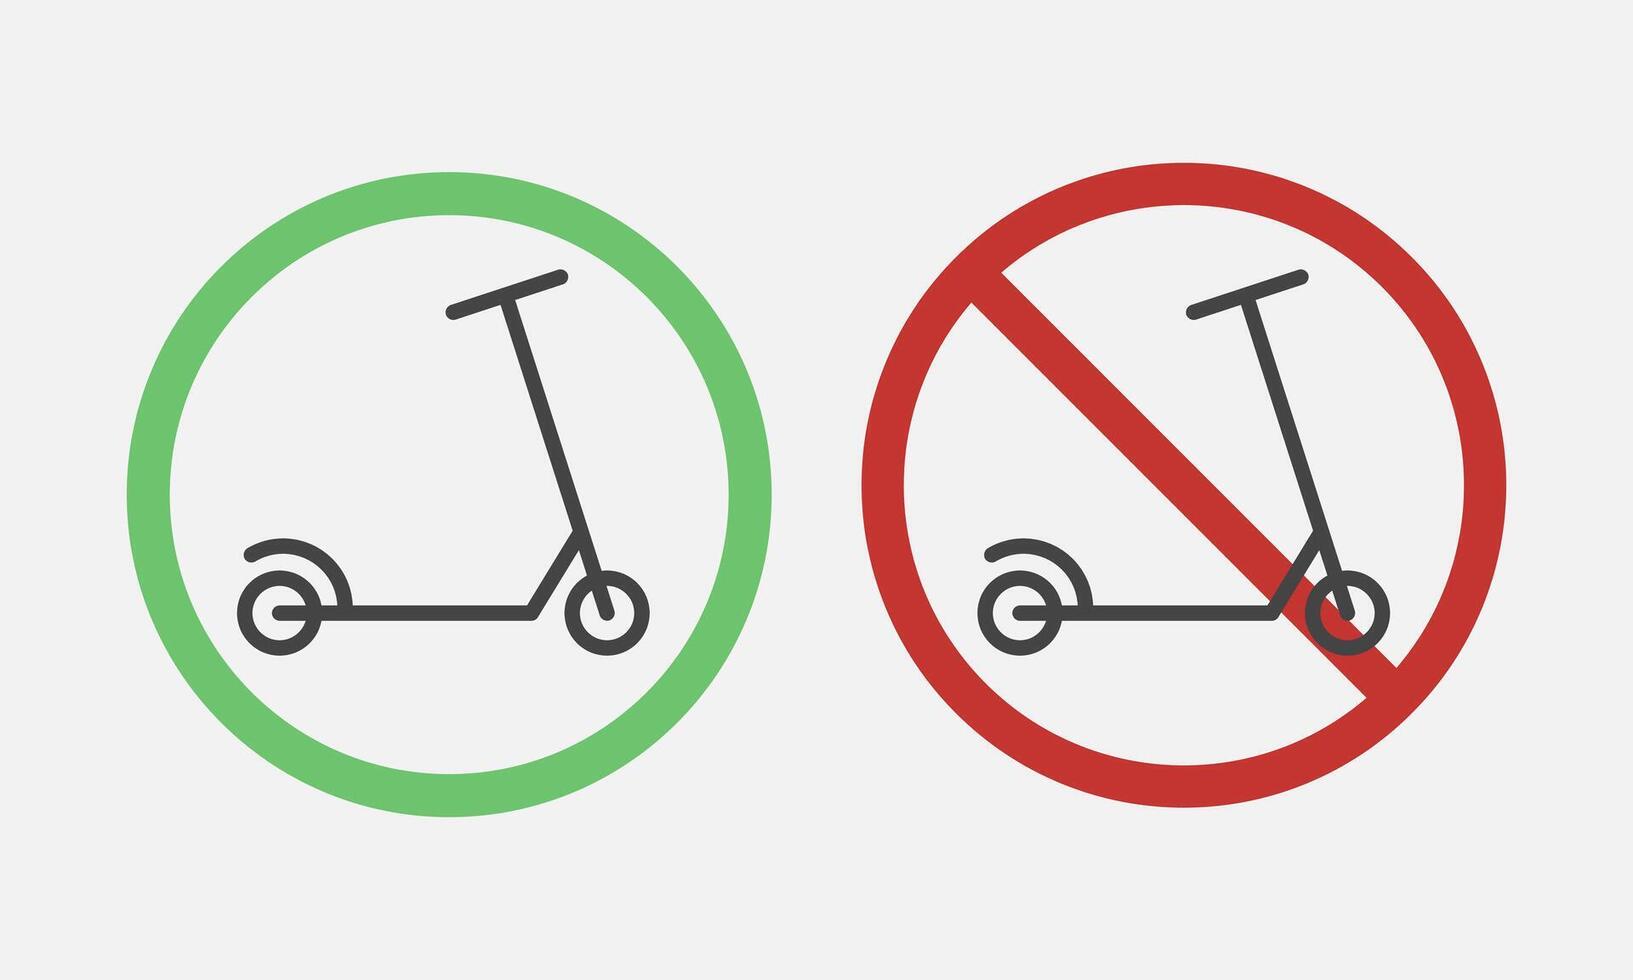 scooter informativo señales. No paseo scooters prohibido, no permitido transporte símbolo. vector ilustración